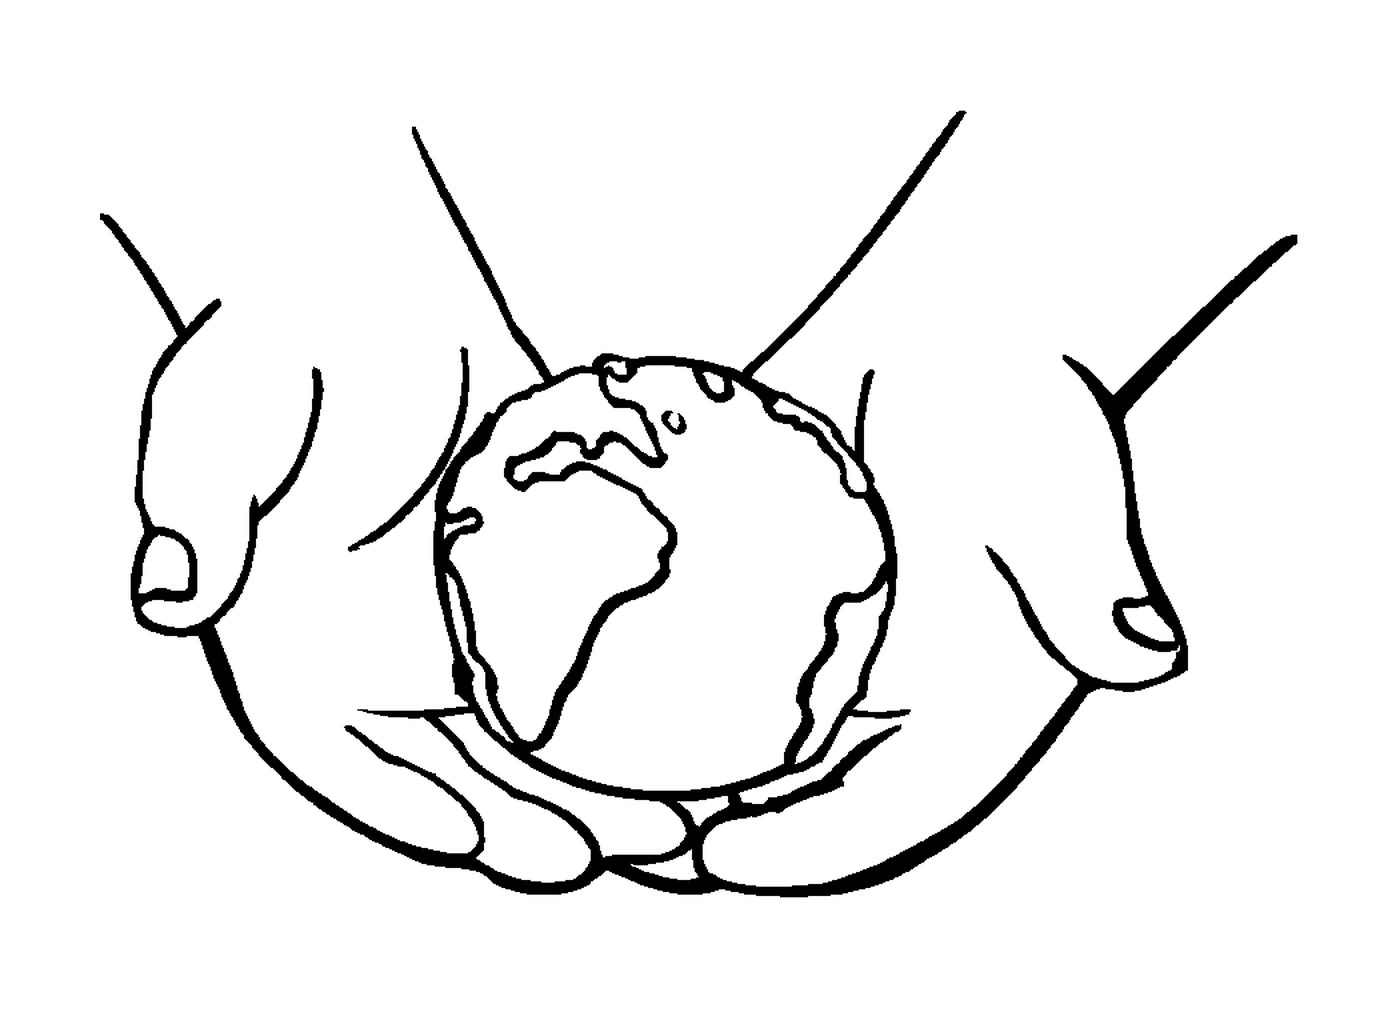  Segure a Terra em suas mãos, símbolo da união 